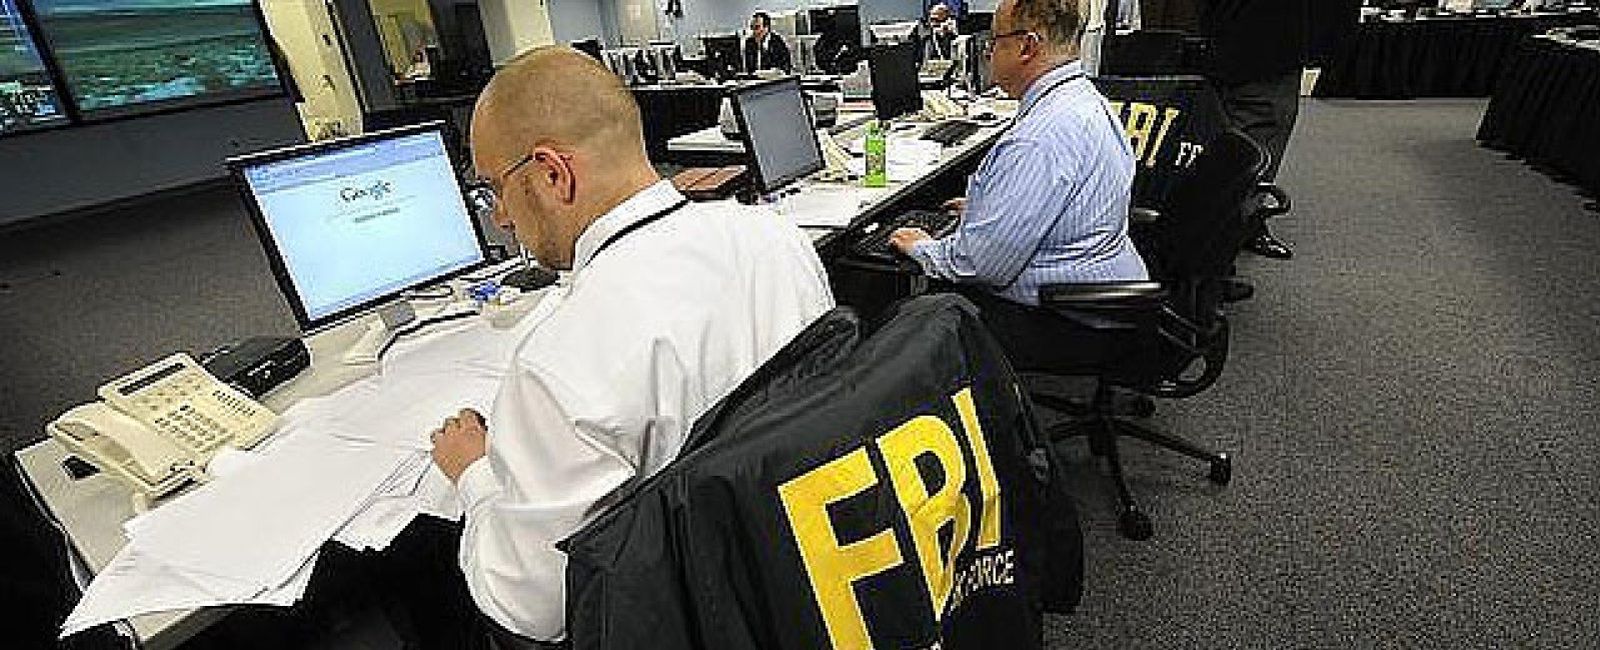 Foto: El FBI también piratea: Dexter y Homeland, entre las series que más descargan